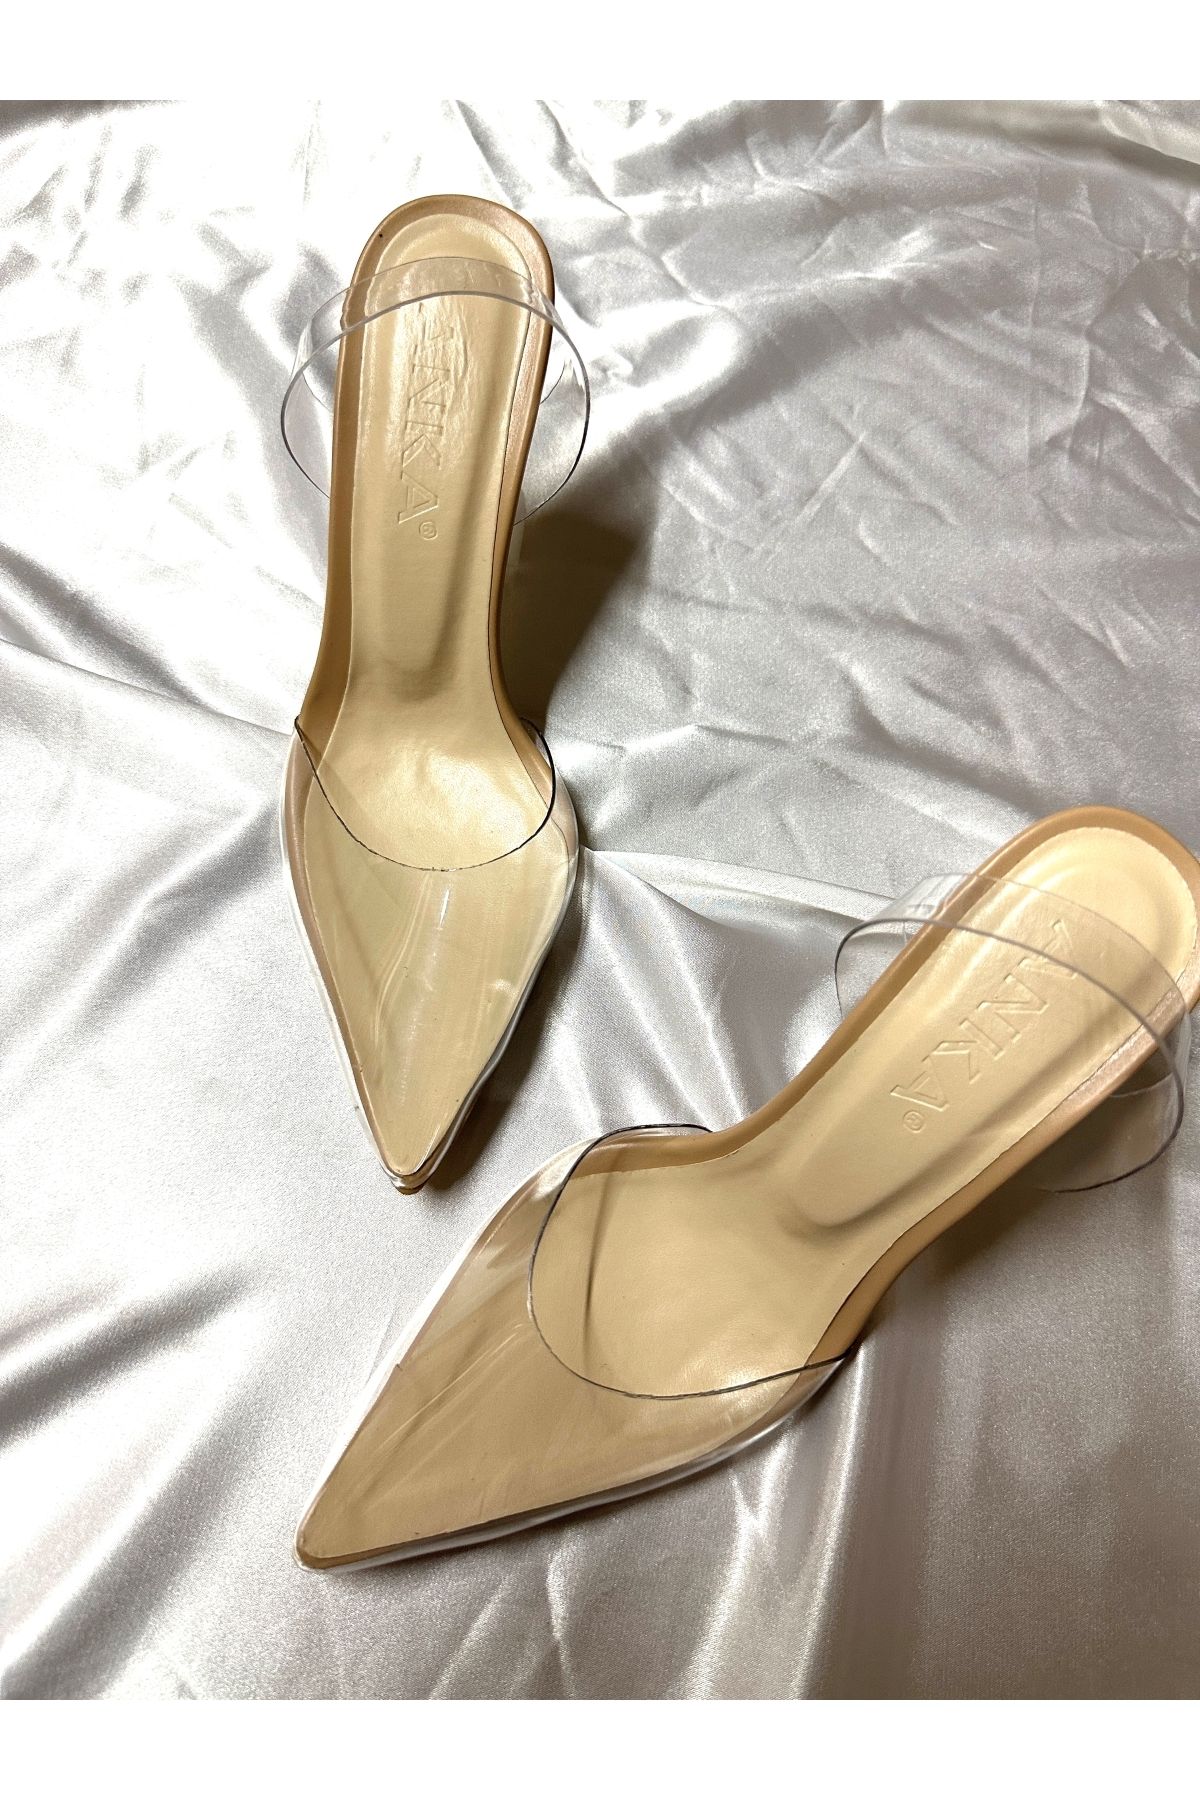 TrendyAnka Kadın Princess Nude Bej Ten 8 cm Şeffaf Topuklu Stiletto Sivri Burunlu Ayakkabı